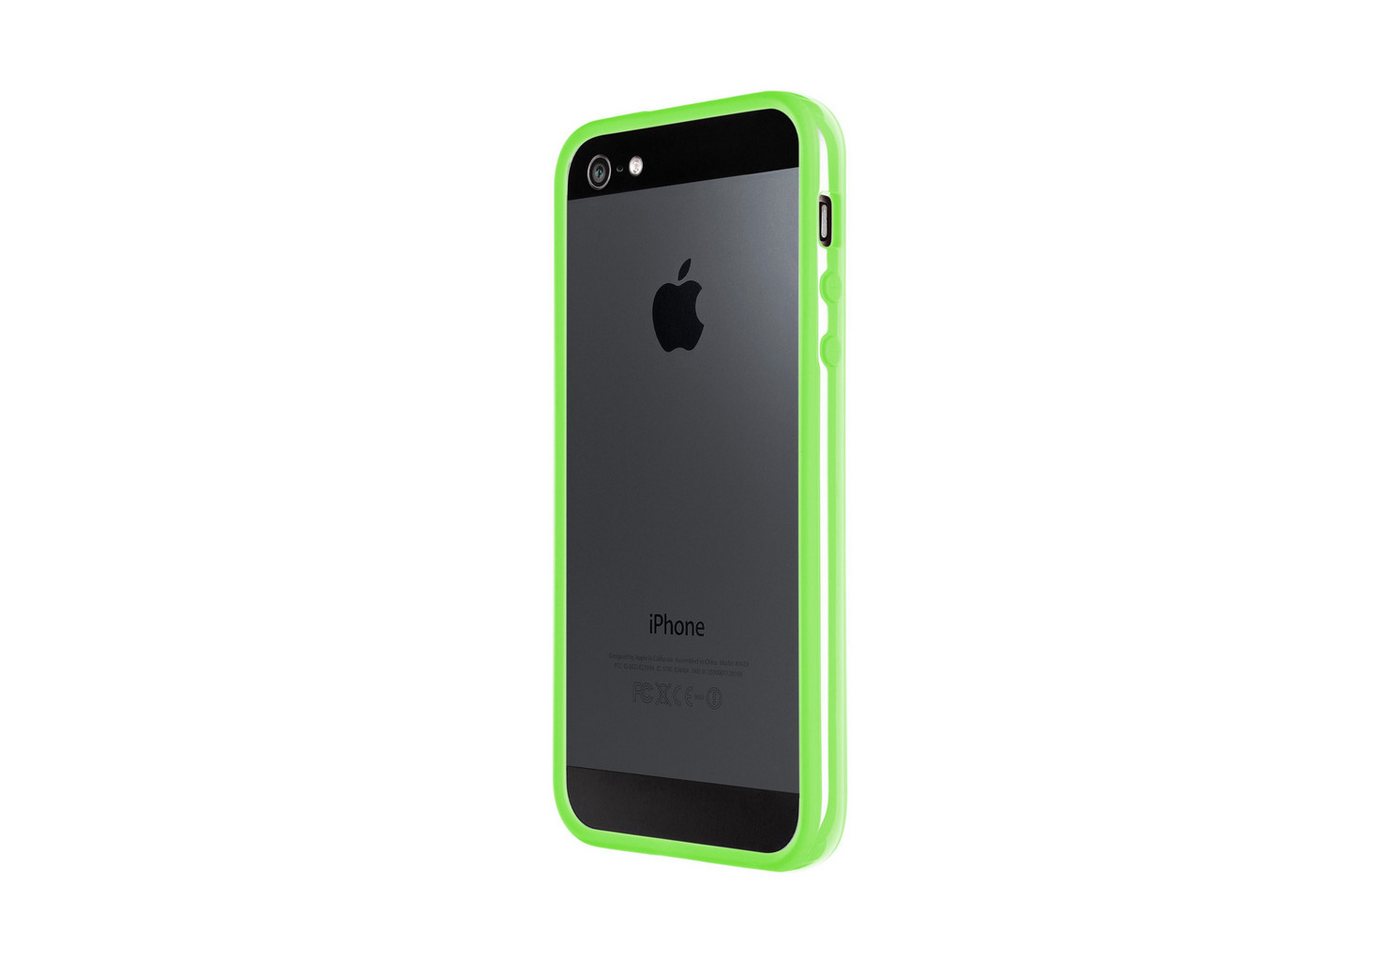 Artwizz Bumper Bumper, Kunststoff Schutzrahmen mit Soft-Touch Beschichtung, Neon Grün, iPhone SE (2016), iPhone 5S, iPhone 5 von Artwizz